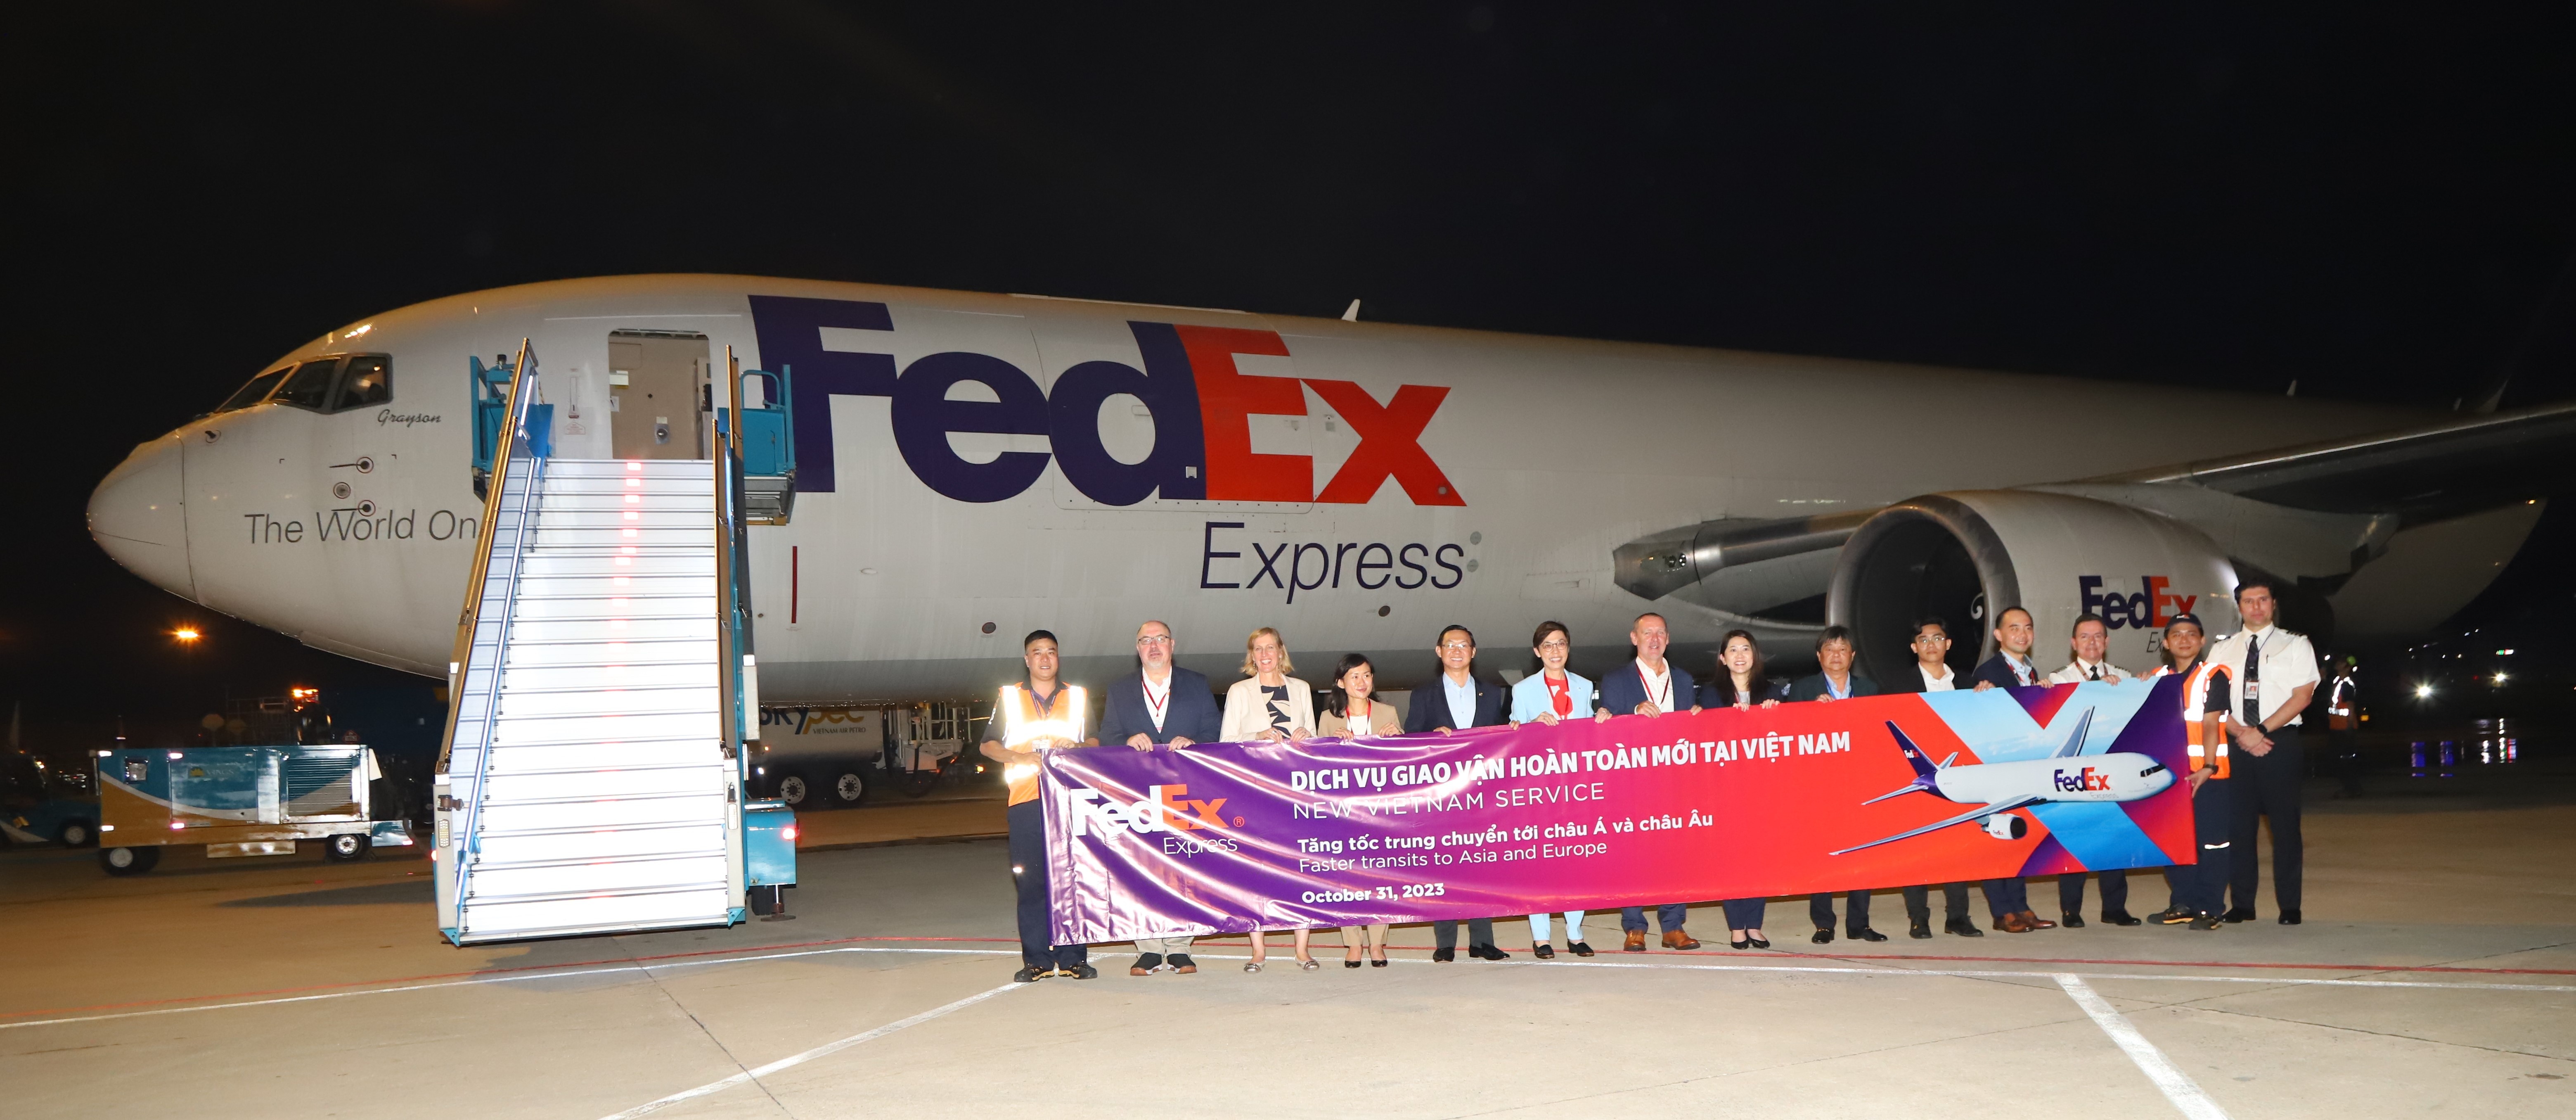 FedEx Express khánh thành đường bay mới từ TP. Hồ Chí Minh, rút ngắn thời gian vận chuyển hàng hóa